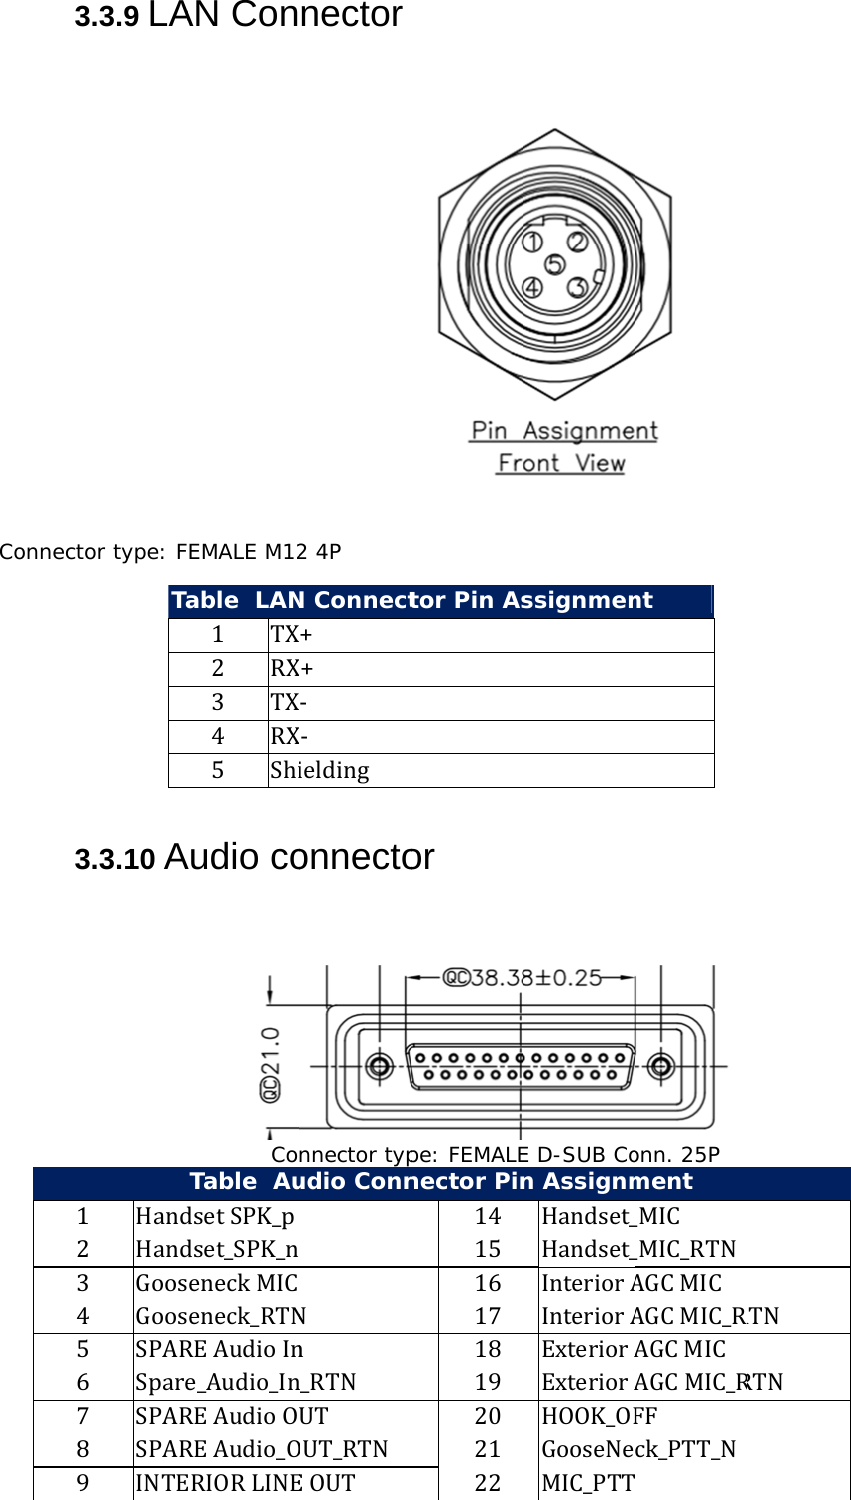 Connec3.3.9 LActor type: FTa3.3.10 A1 Hand2 Hand3 Goos4 Goos5 SPAR6 Spare7 SPAR8 SPAR9 INTEAN ConFEMALE M12able  LAN1 TX2 RX3 TX4 RX5 ShiAudio coCoTable  AudsetSPK_pdset_SPK_nseneckMICseneck_RTNREAudioIne_Audio_InREAudioOREAudio_OERIORLINEnector2 4P N ConnectX+X+X‐X‐ieldingonnectonnector typudio ConnNnn_RTNUTOUT_RTNEOUT tor Pin As or pe: FEMALEnector Pin141516171819202122ssignmenE D-SUB Con AssignmHandset_Handset_InteriorAInteriorAExteriorAExteriorAHOOK_OFGooseNeMIC_PTT ntonn. 25P ment_MIC_MIC_RTNAGCMICAGCMIC_RAGCMICAGCMIC_RFFck_PTT_NRTNRTN 